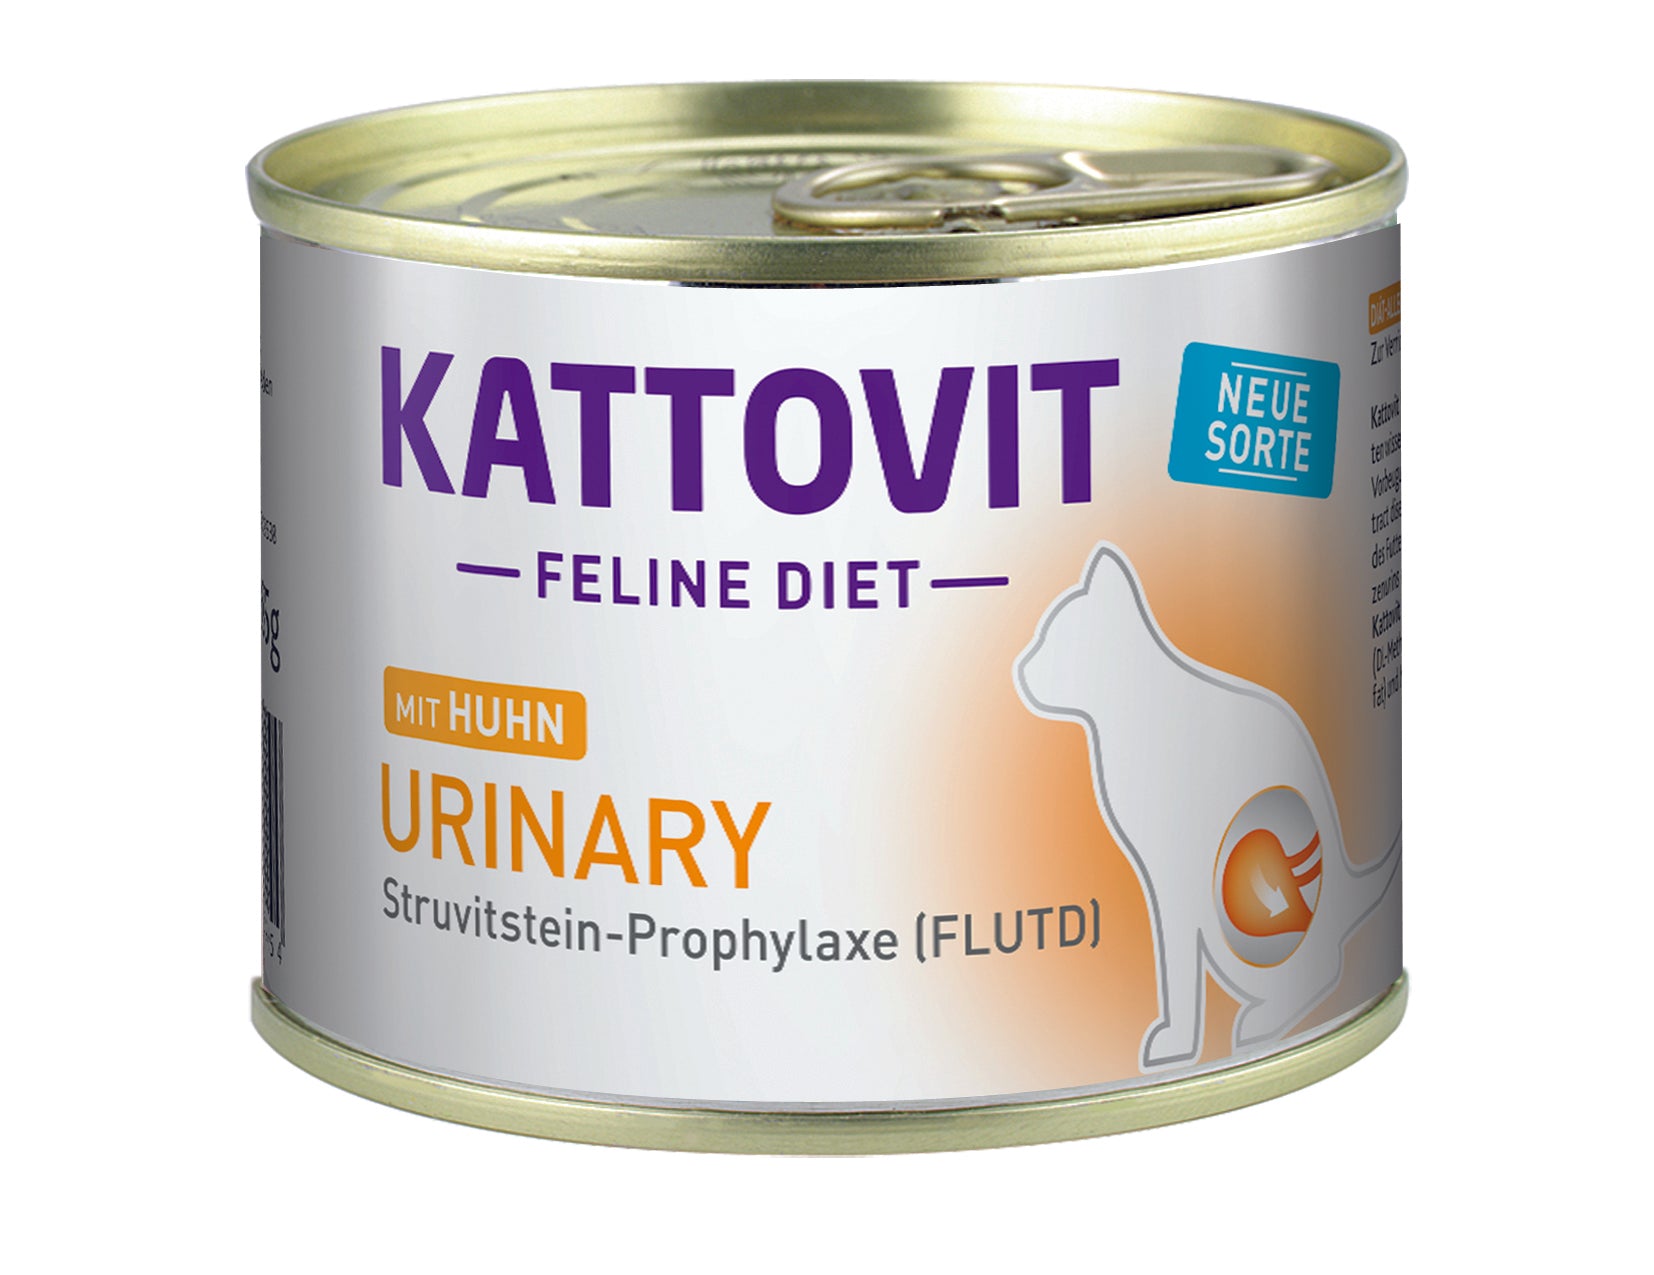 Artikel mit dem Namen Kattovit Feline Diet Urinary im Shop von zoo.de , dem Onlineshop für nachhaltiges Hundefutter und Katzenfutter.